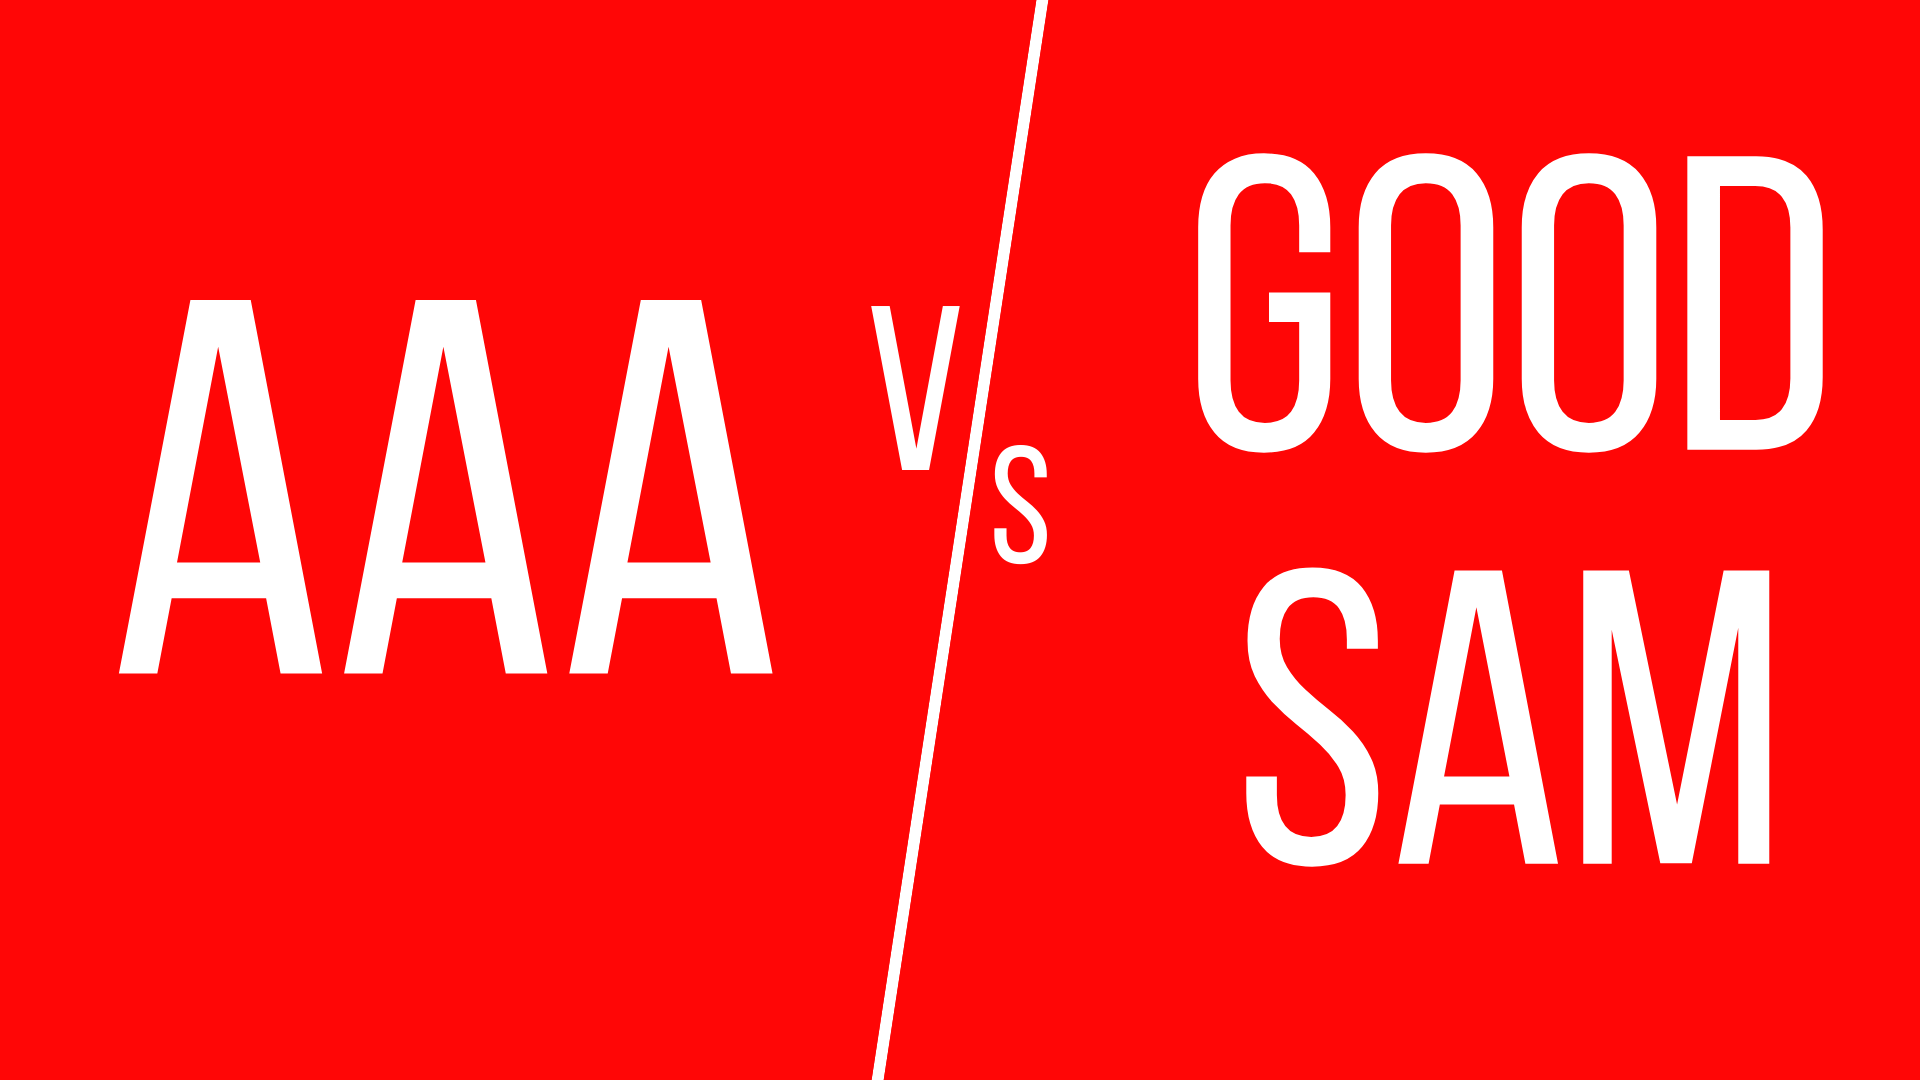 AAA vs Good Sam